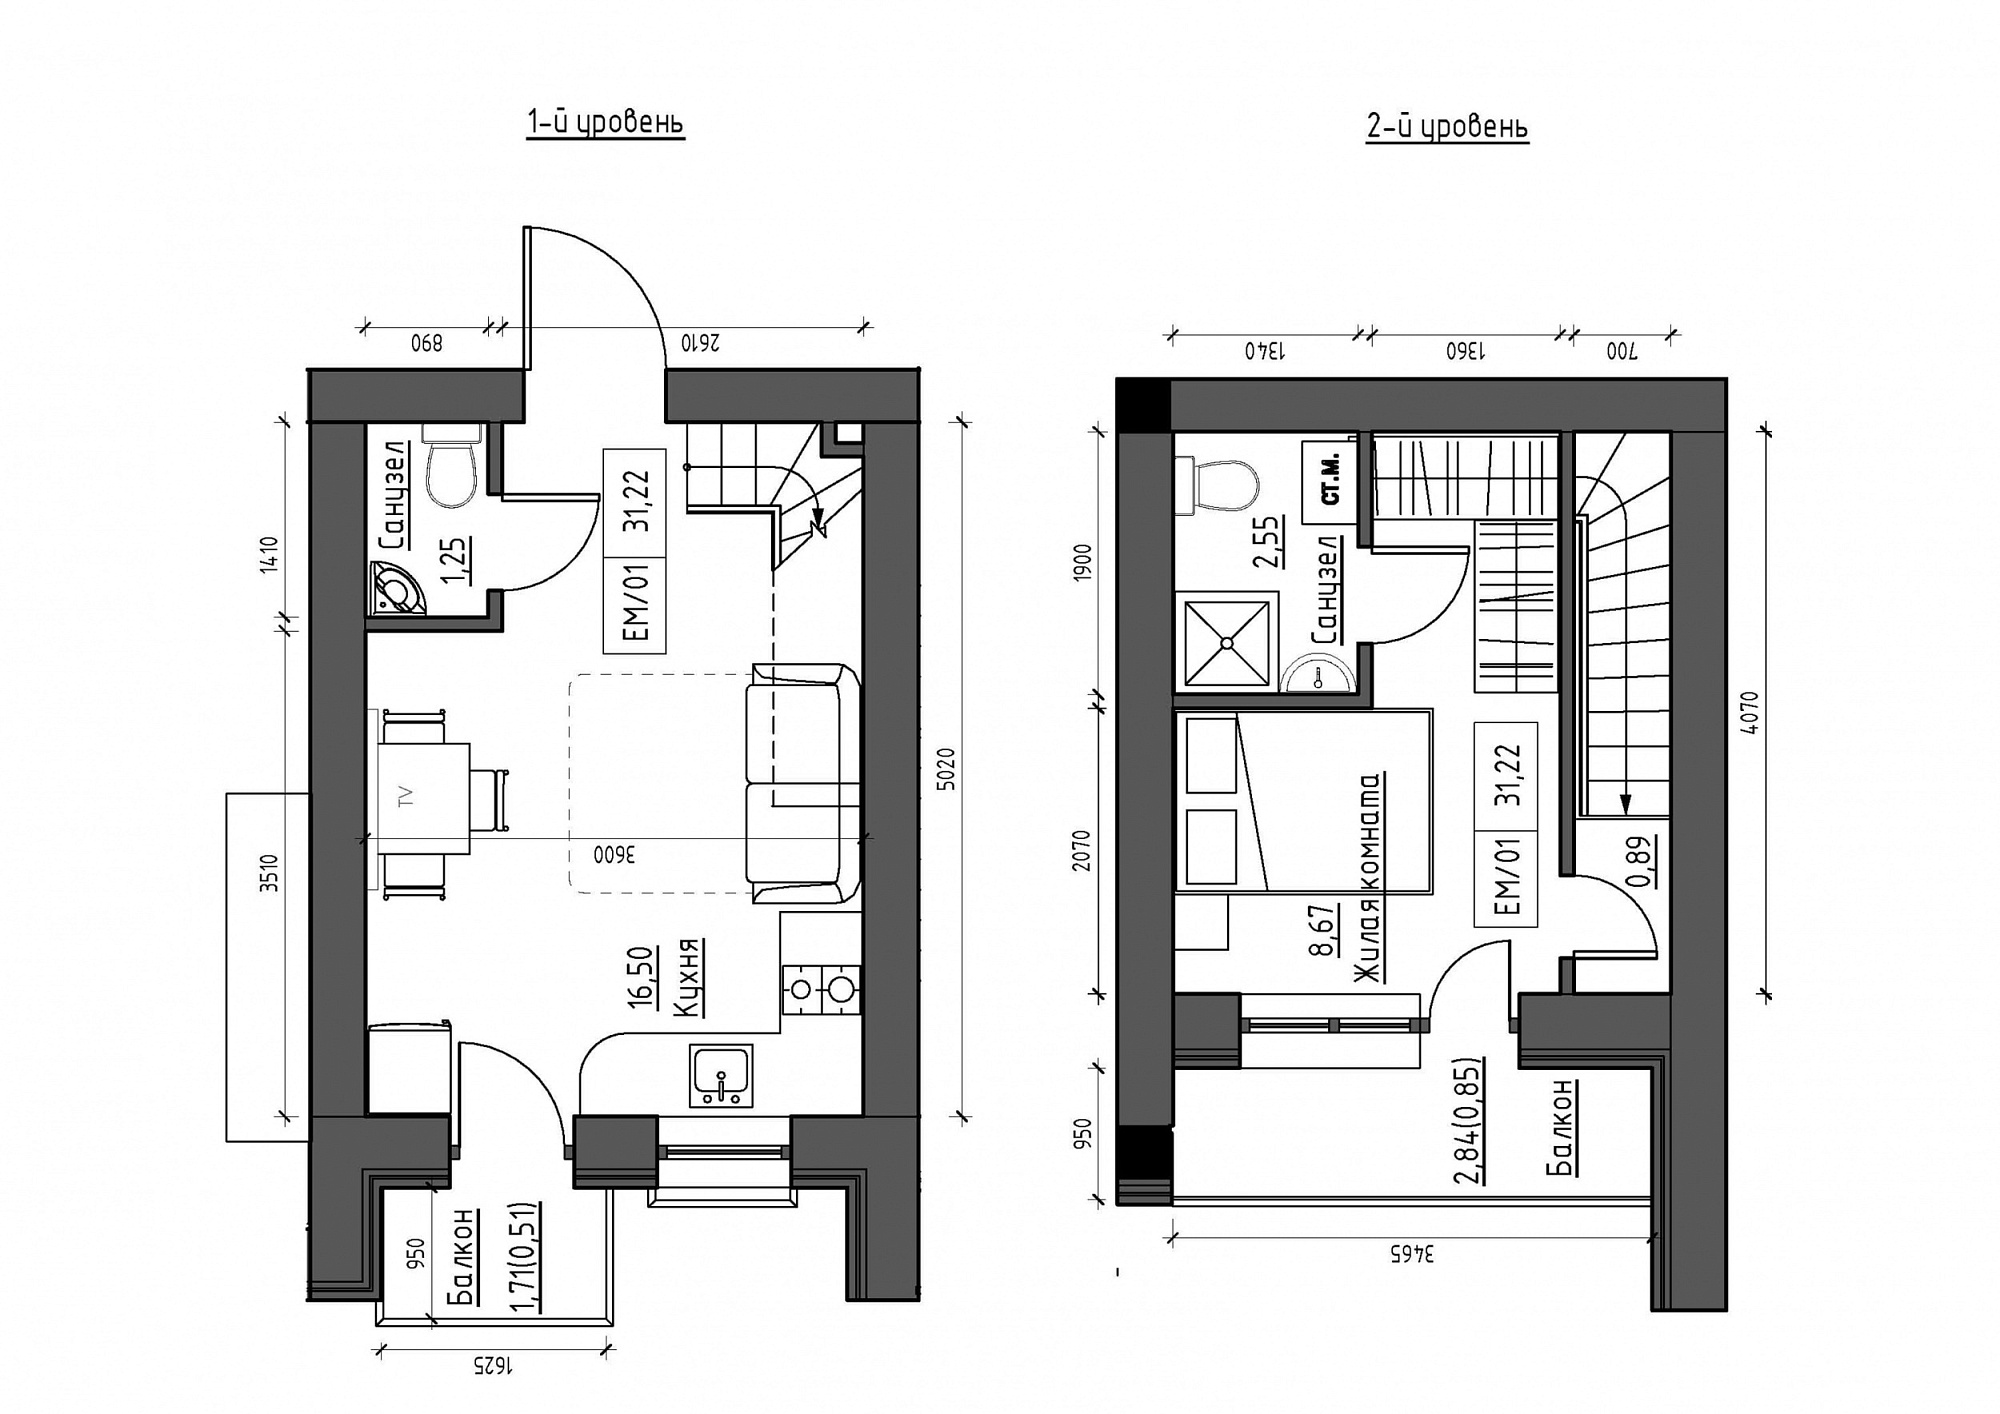 Planning 2-lvl flats area 31.22m2, KS-012-05/0013.